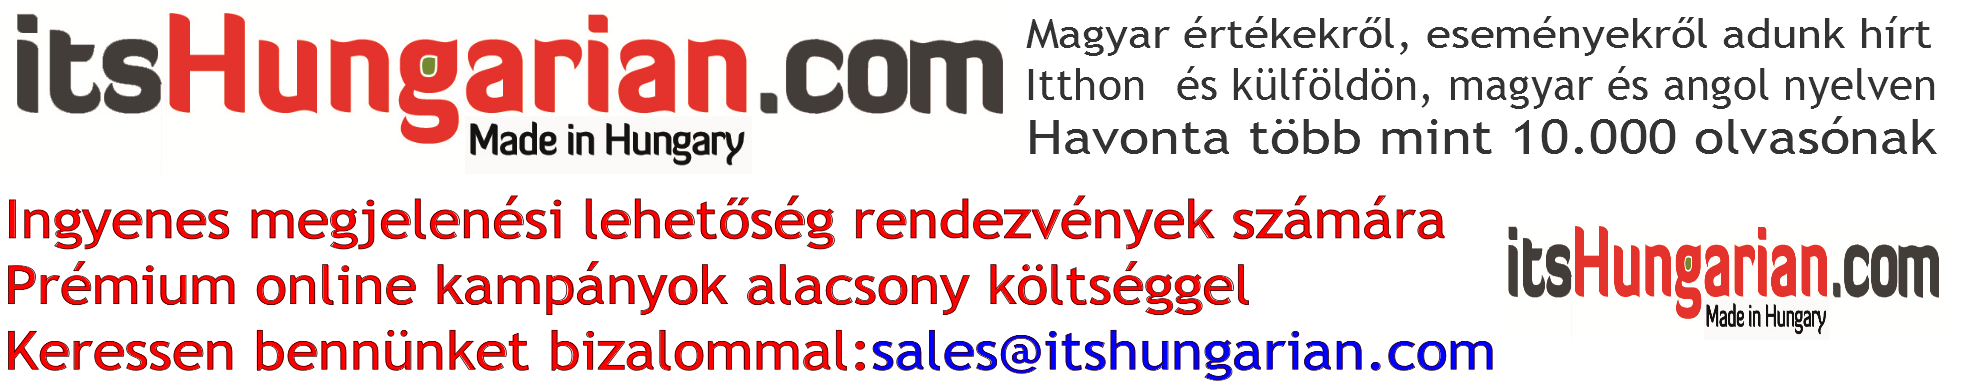 IH magyar sales banner_XYYX_ 2016